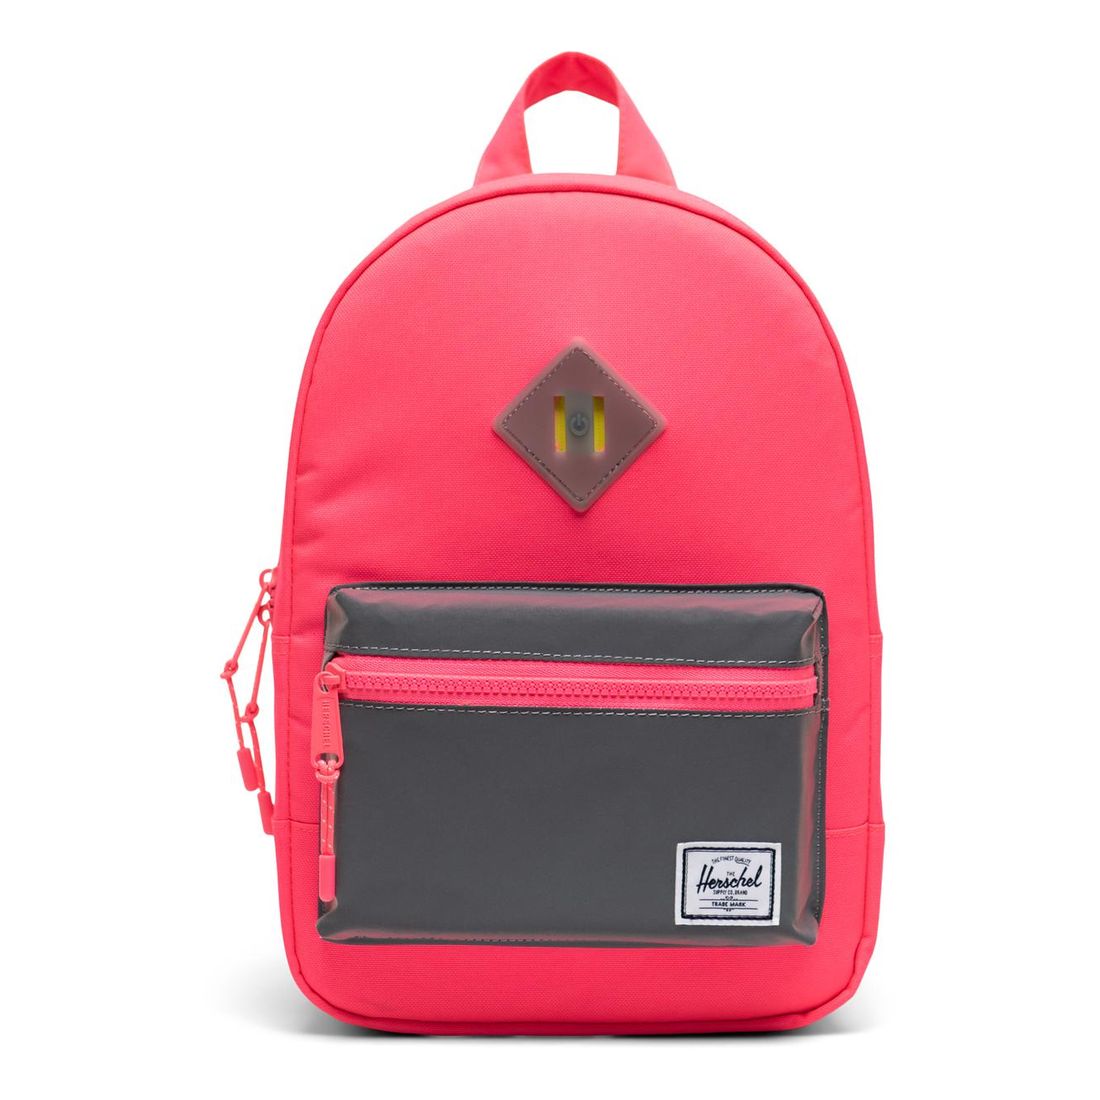 Herschel Heritage Kids Backpack - Neon Pink/Silver Reflective